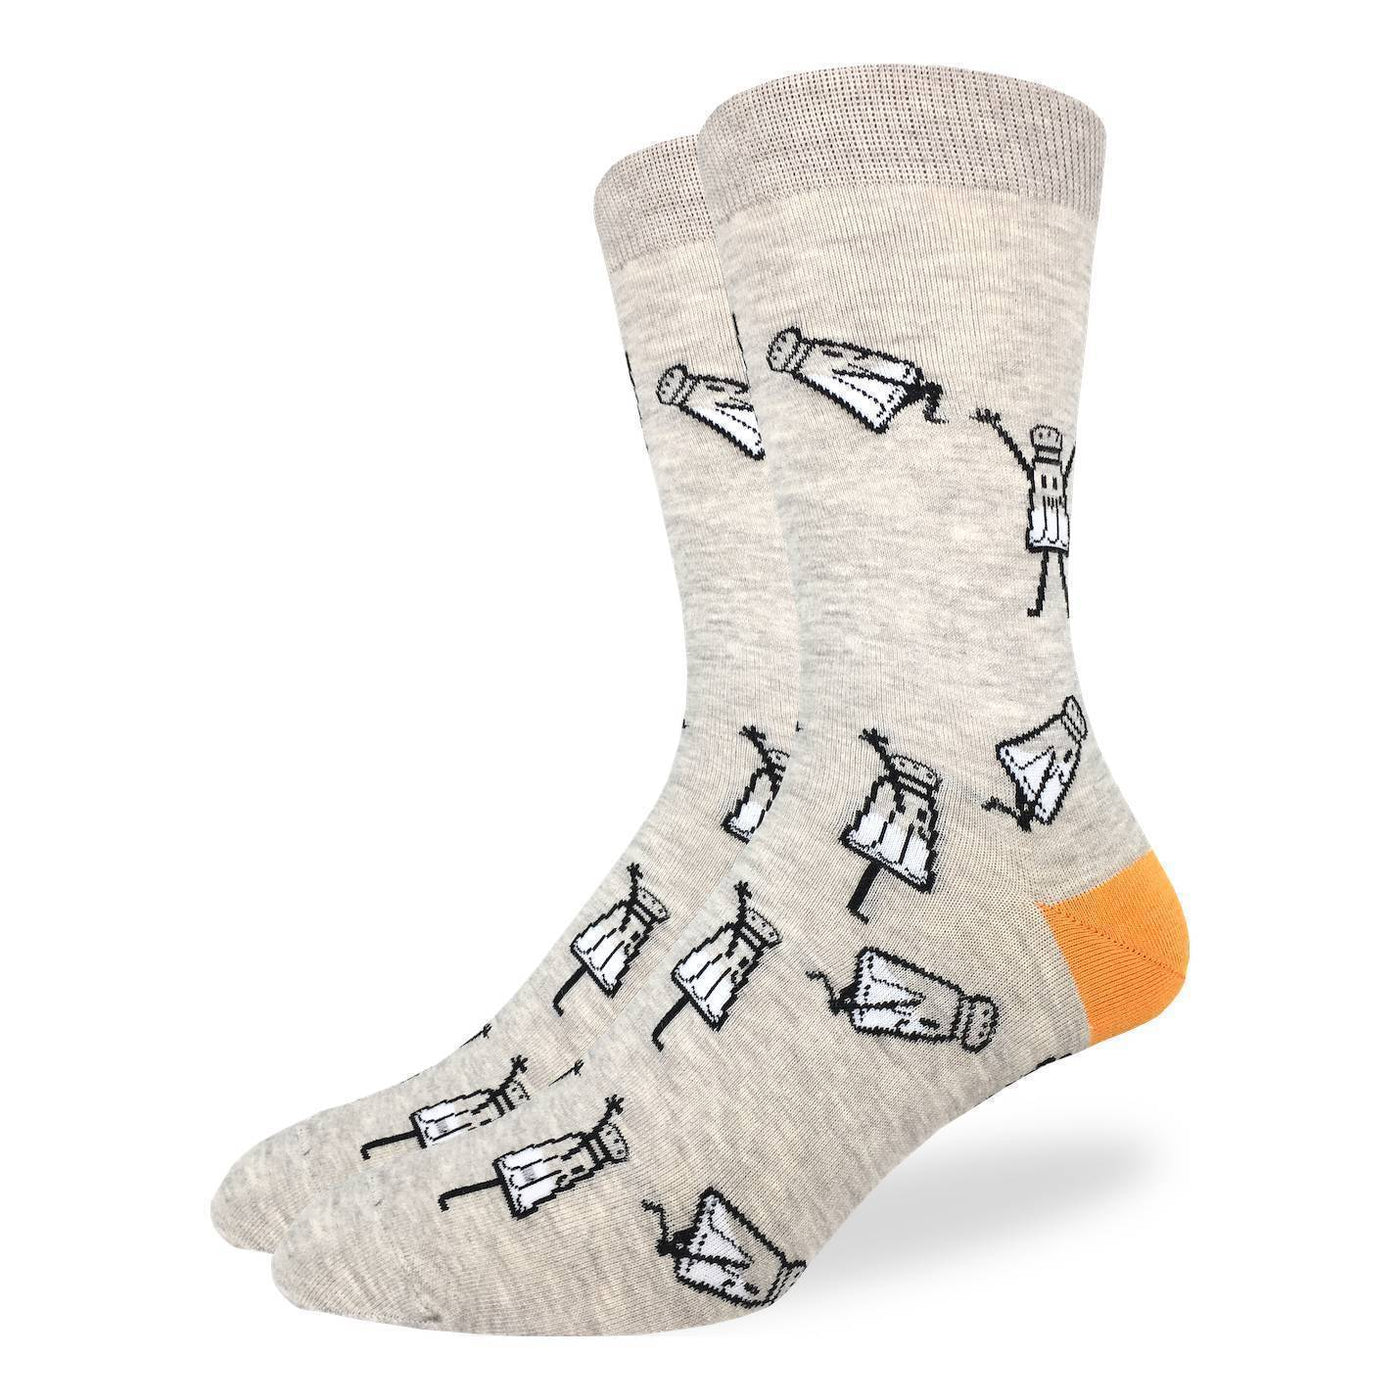 Salt shaker socks